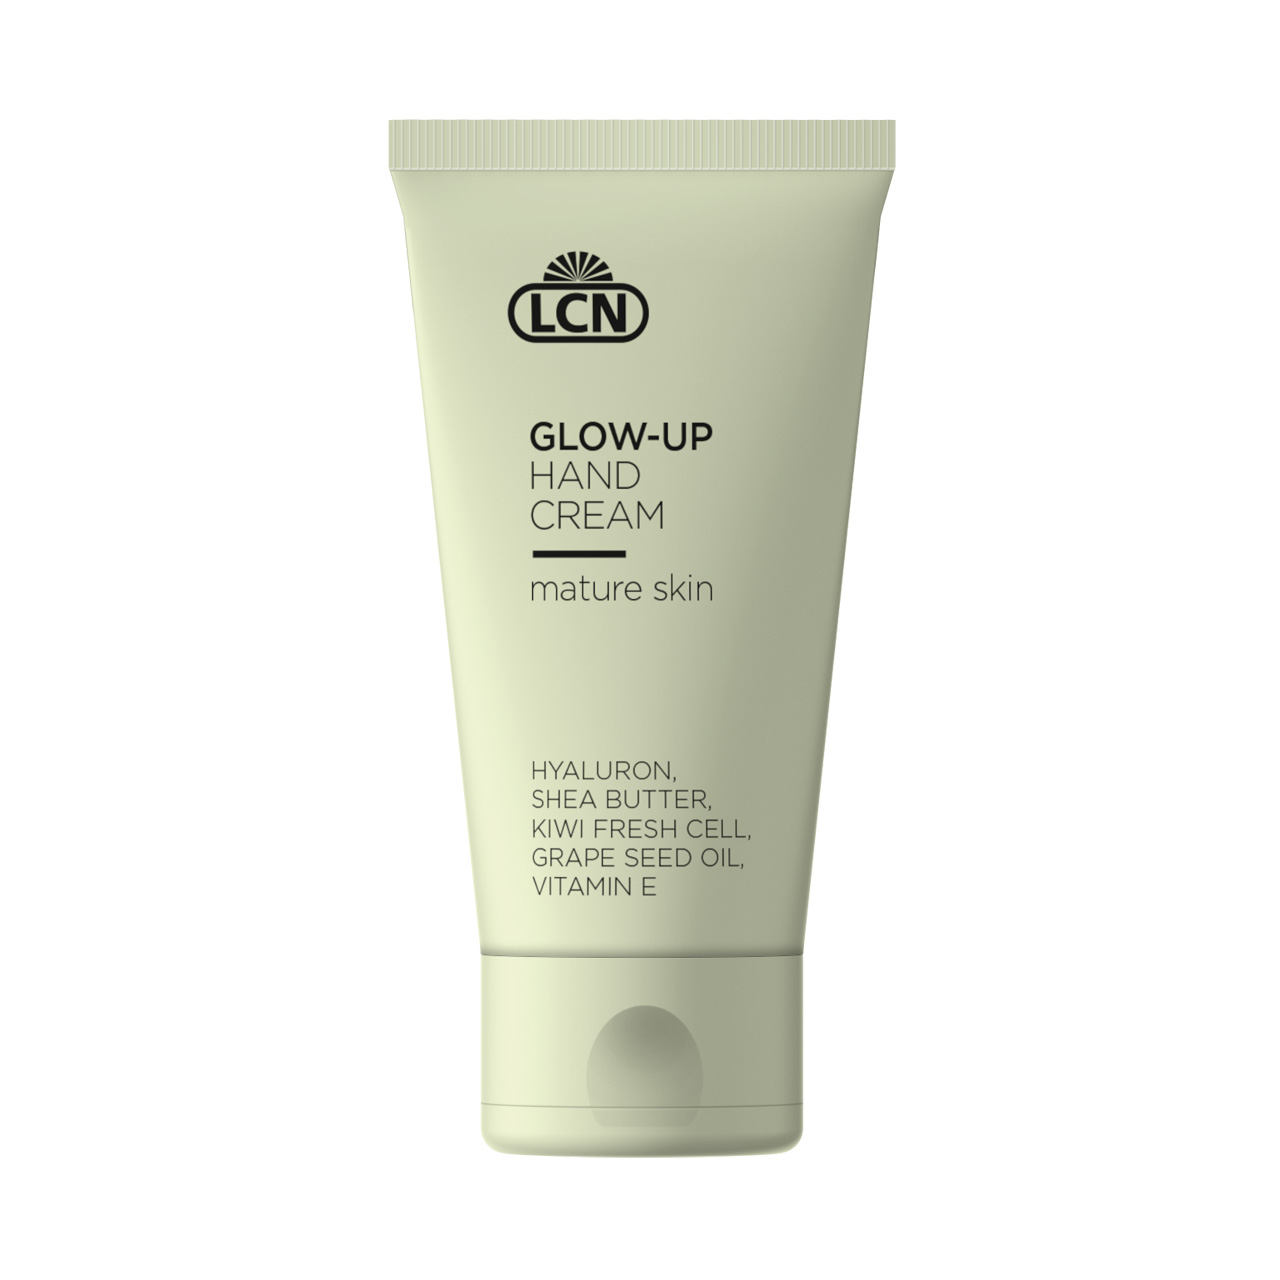 Glow-Up Hand Cream, 50 ml mature skin